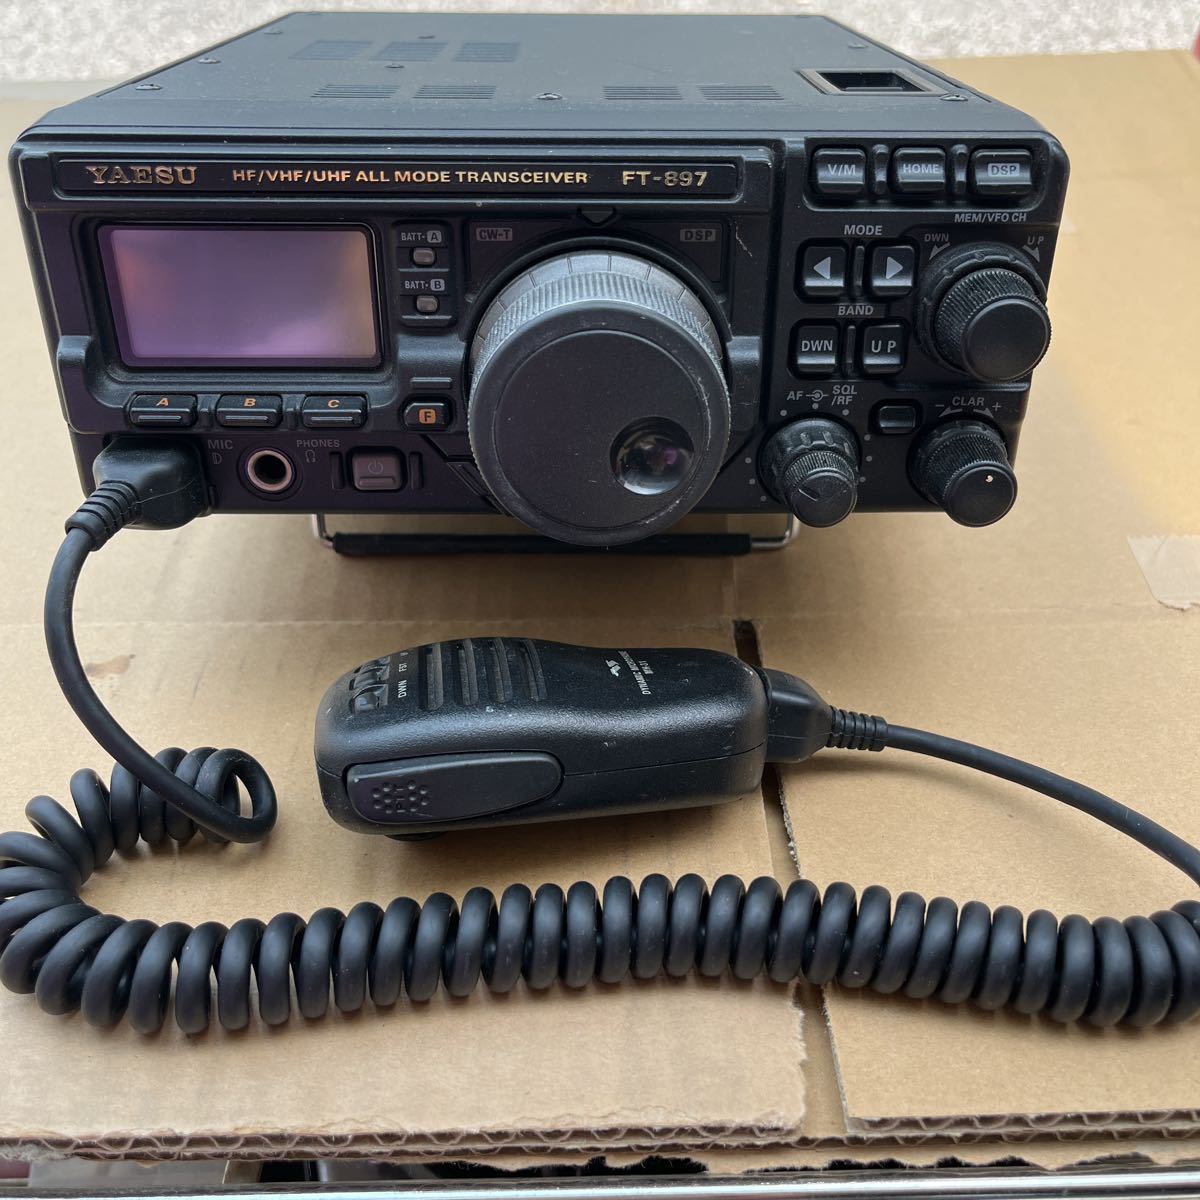 ヤエス八重洲無線FT-897 YAESU HF/VHF/UHF ALLMODE TRANSCEIVER  オールモードトランシーバーアマチュア無線的详细信息| 雅虎拍卖代拍| FROM JAPAN